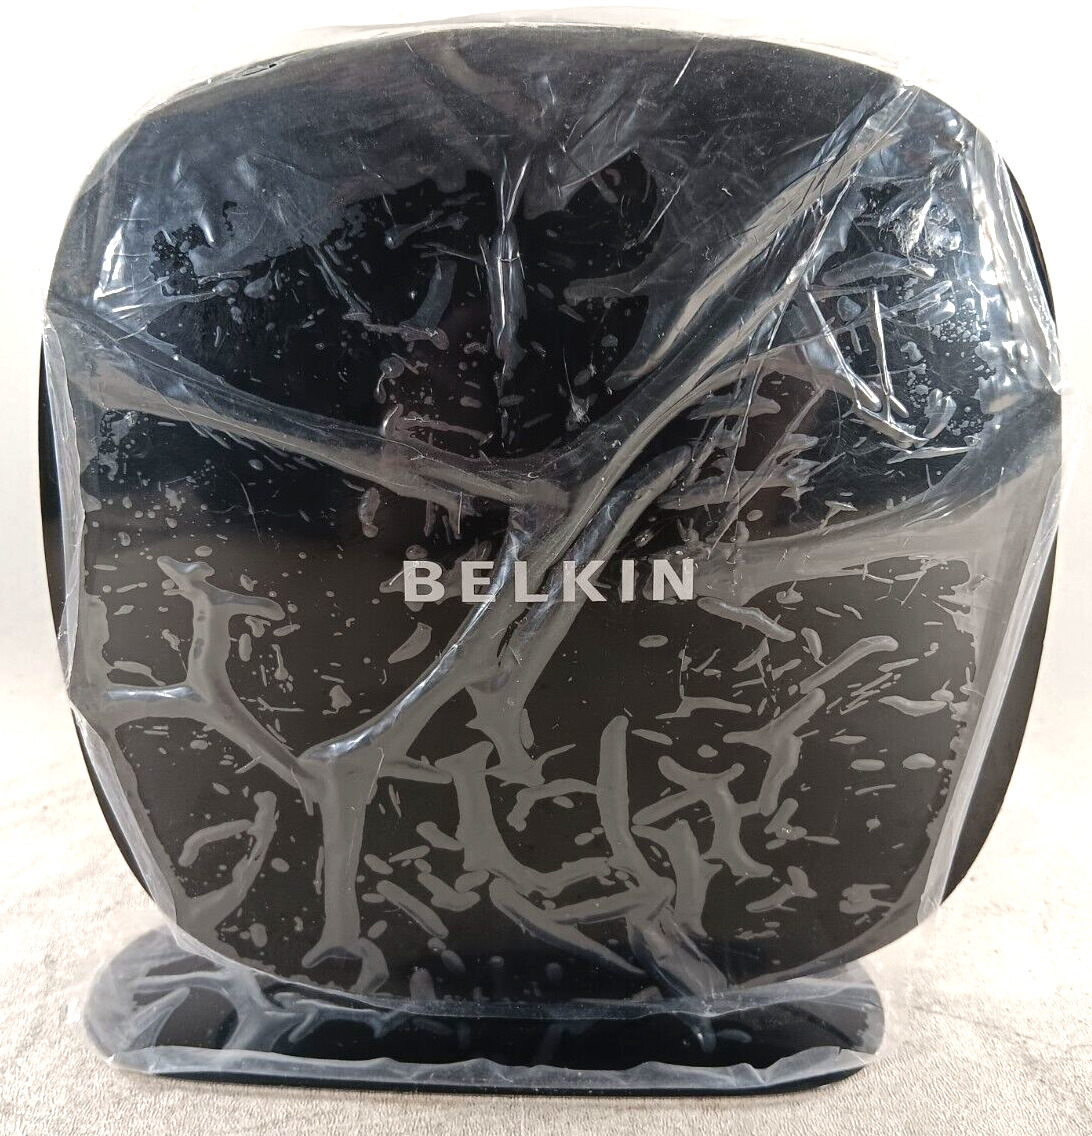 Belkin N750 DB Wireless N+ Router Model F9K1103V1